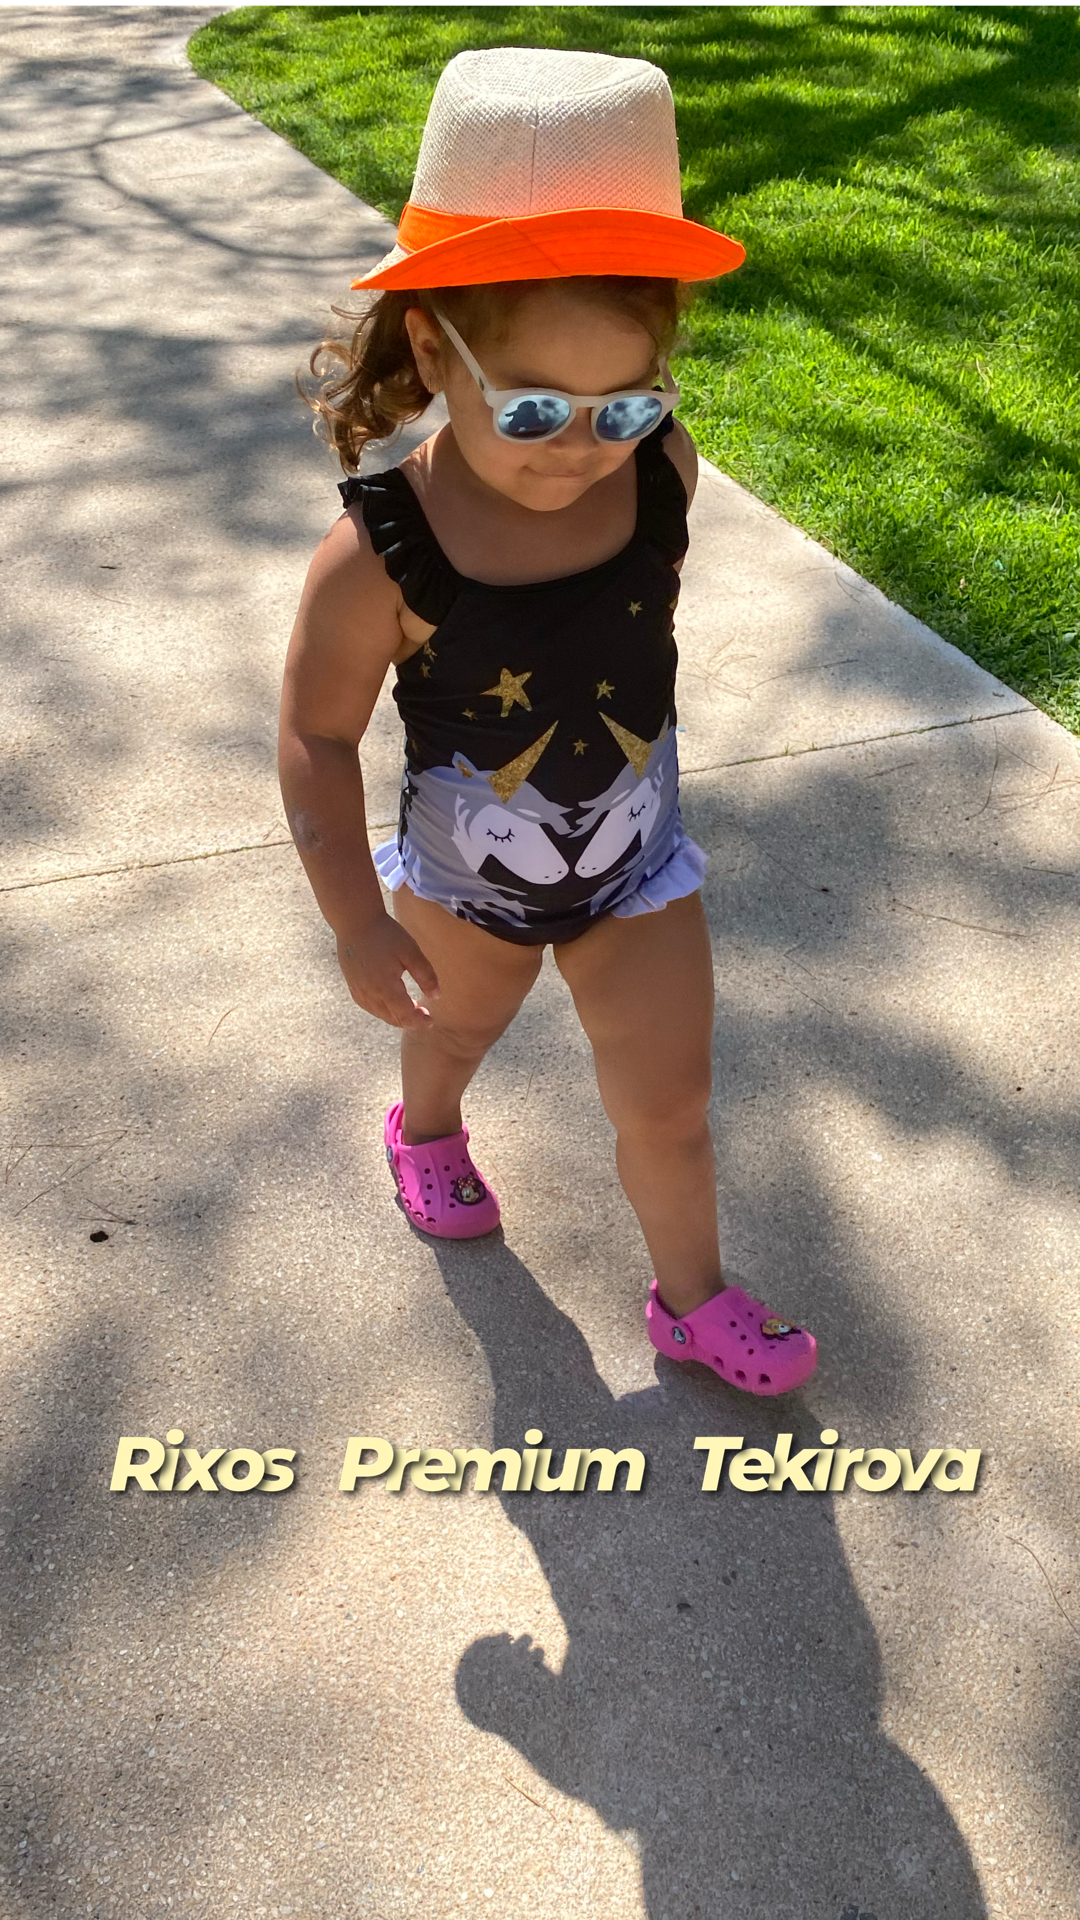 Rixos Premium Tekhirova